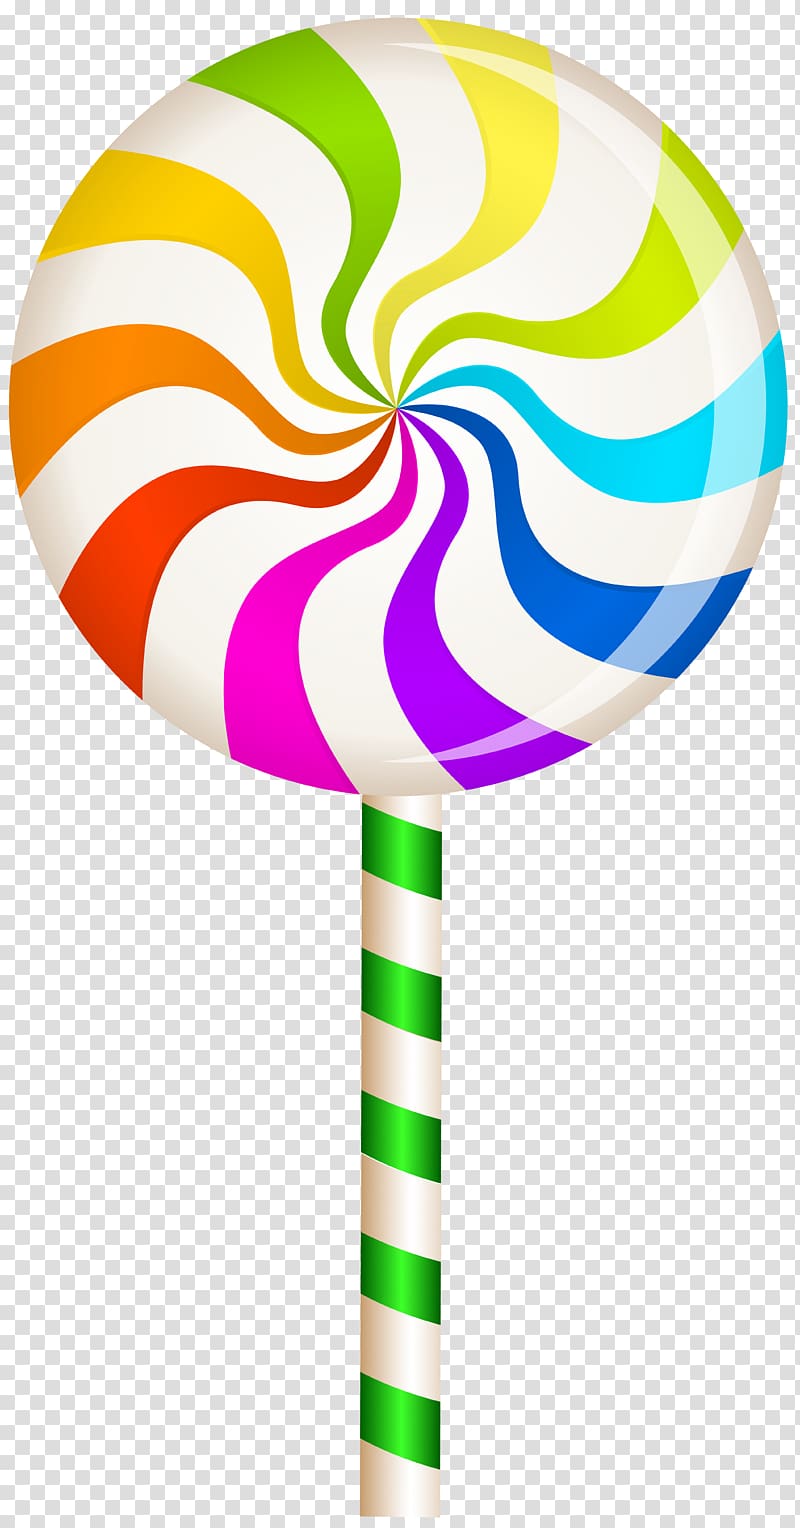 lollipop illustration, Lollipop Candy Confectionery , Multicolor Swirl Lollipop transparent background PNG clipart